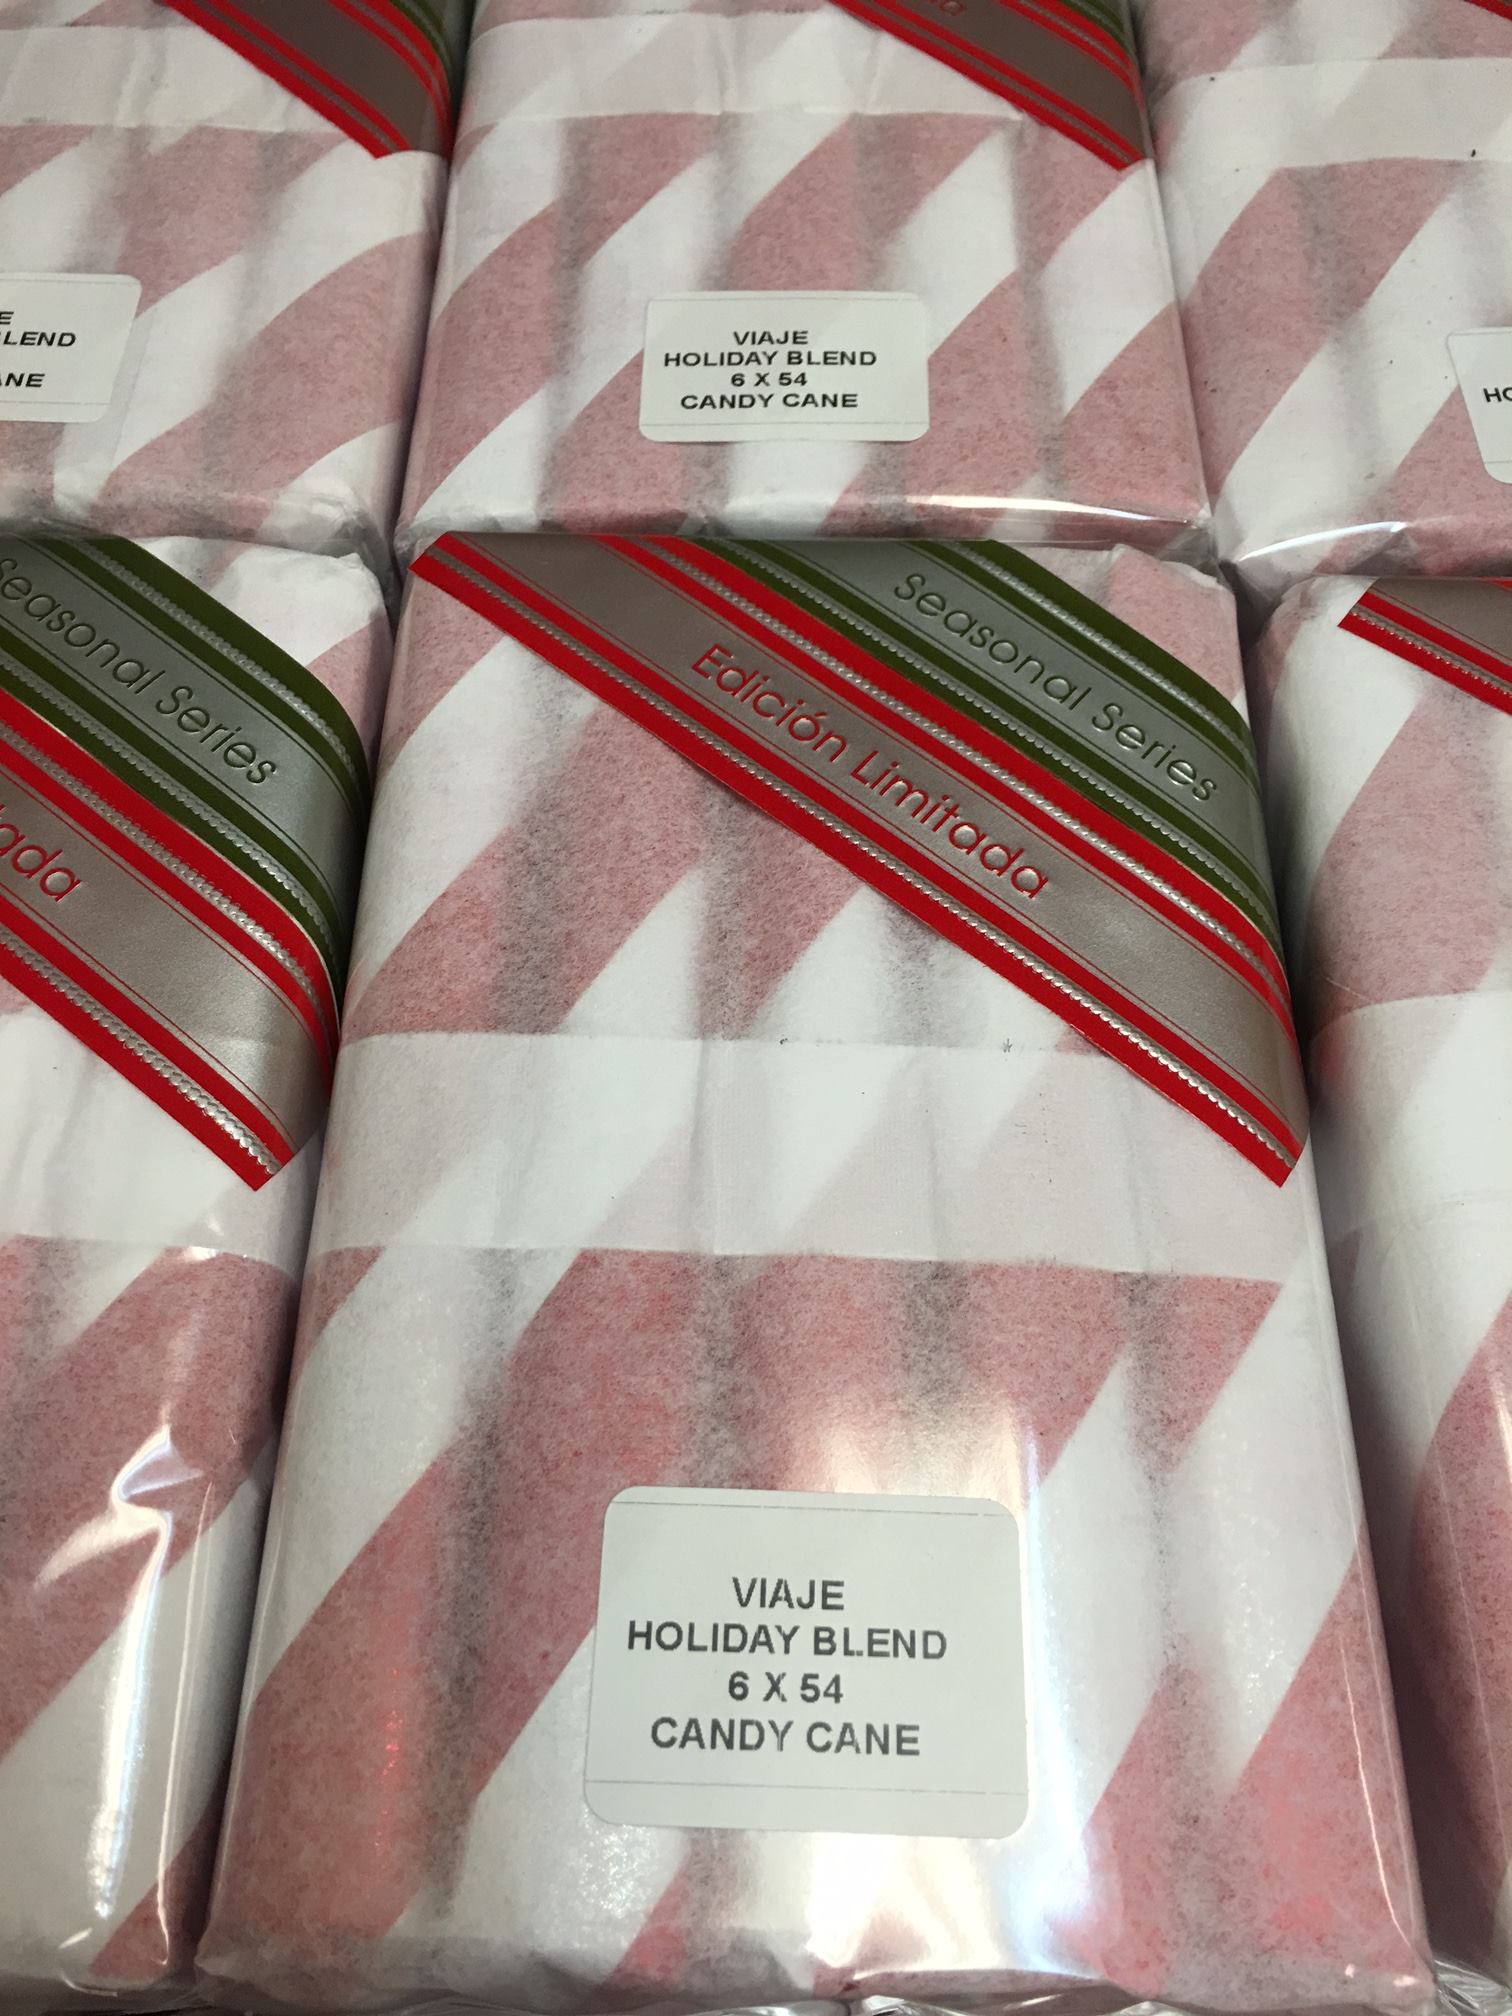 Viaje Holiday Blend Candy Cane 2015 Edicion Limitada